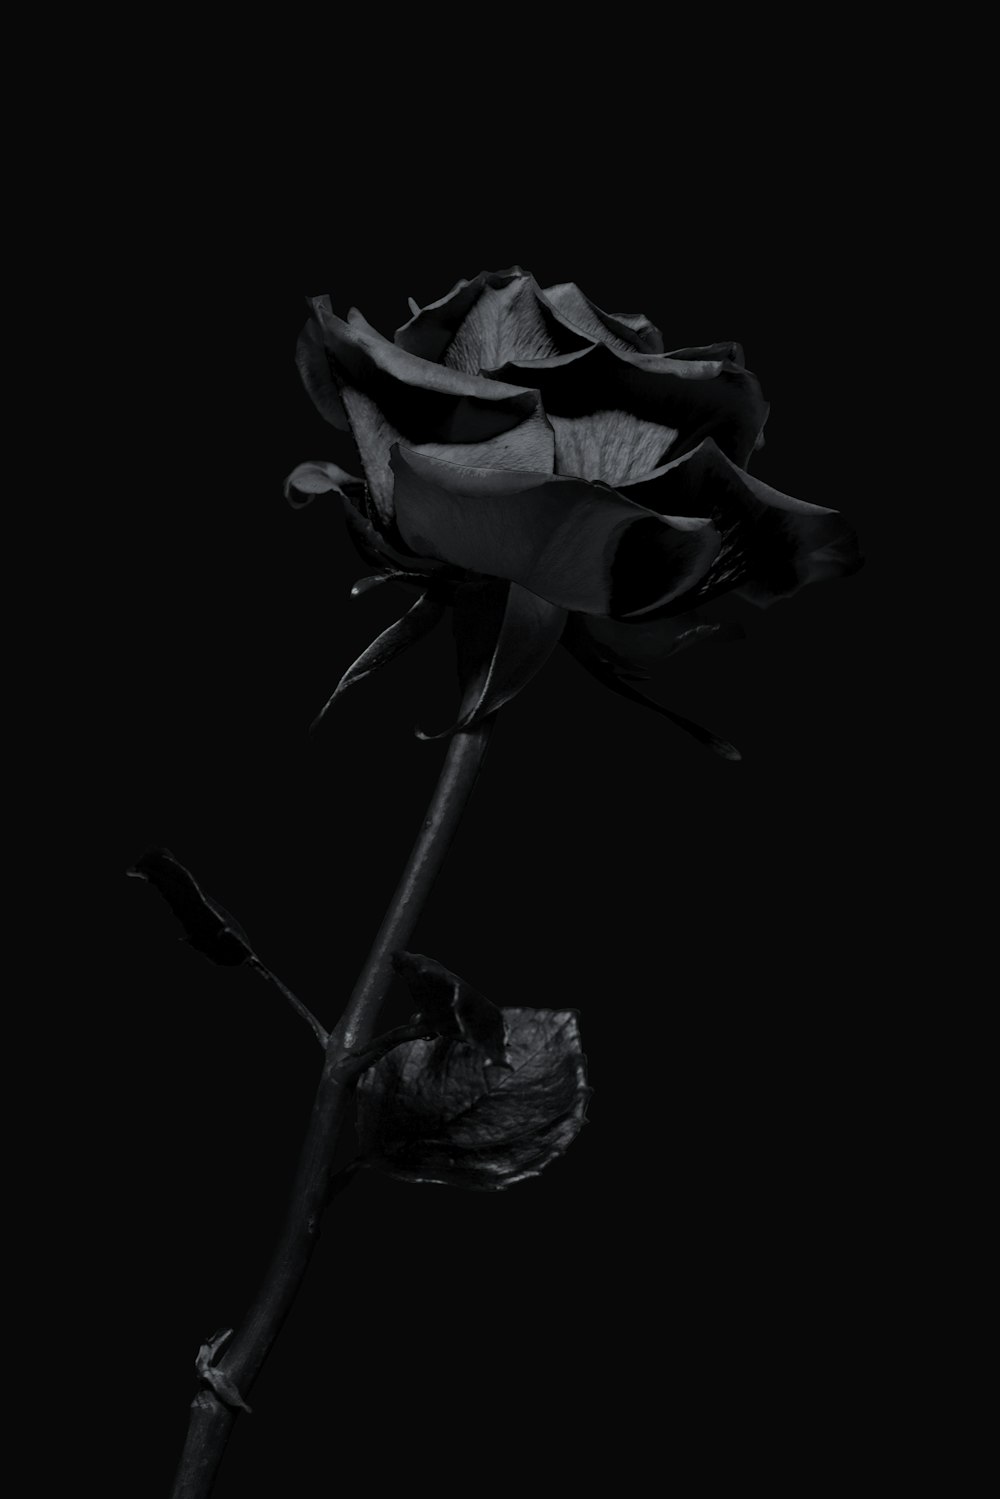 Hoa trắng tím trên nền đen là một chủ đề thú vị cho nhiếp ảnh gia. Tông màu tinh tế và đầy nghệ thuật của hình ảnh sẽ tạo nên một bức tranh độc đáo và sang trọng. Hãy xem hình ảnh để tận hưởng sự tuyệt vời của hoa trắng tím trên nền đen.